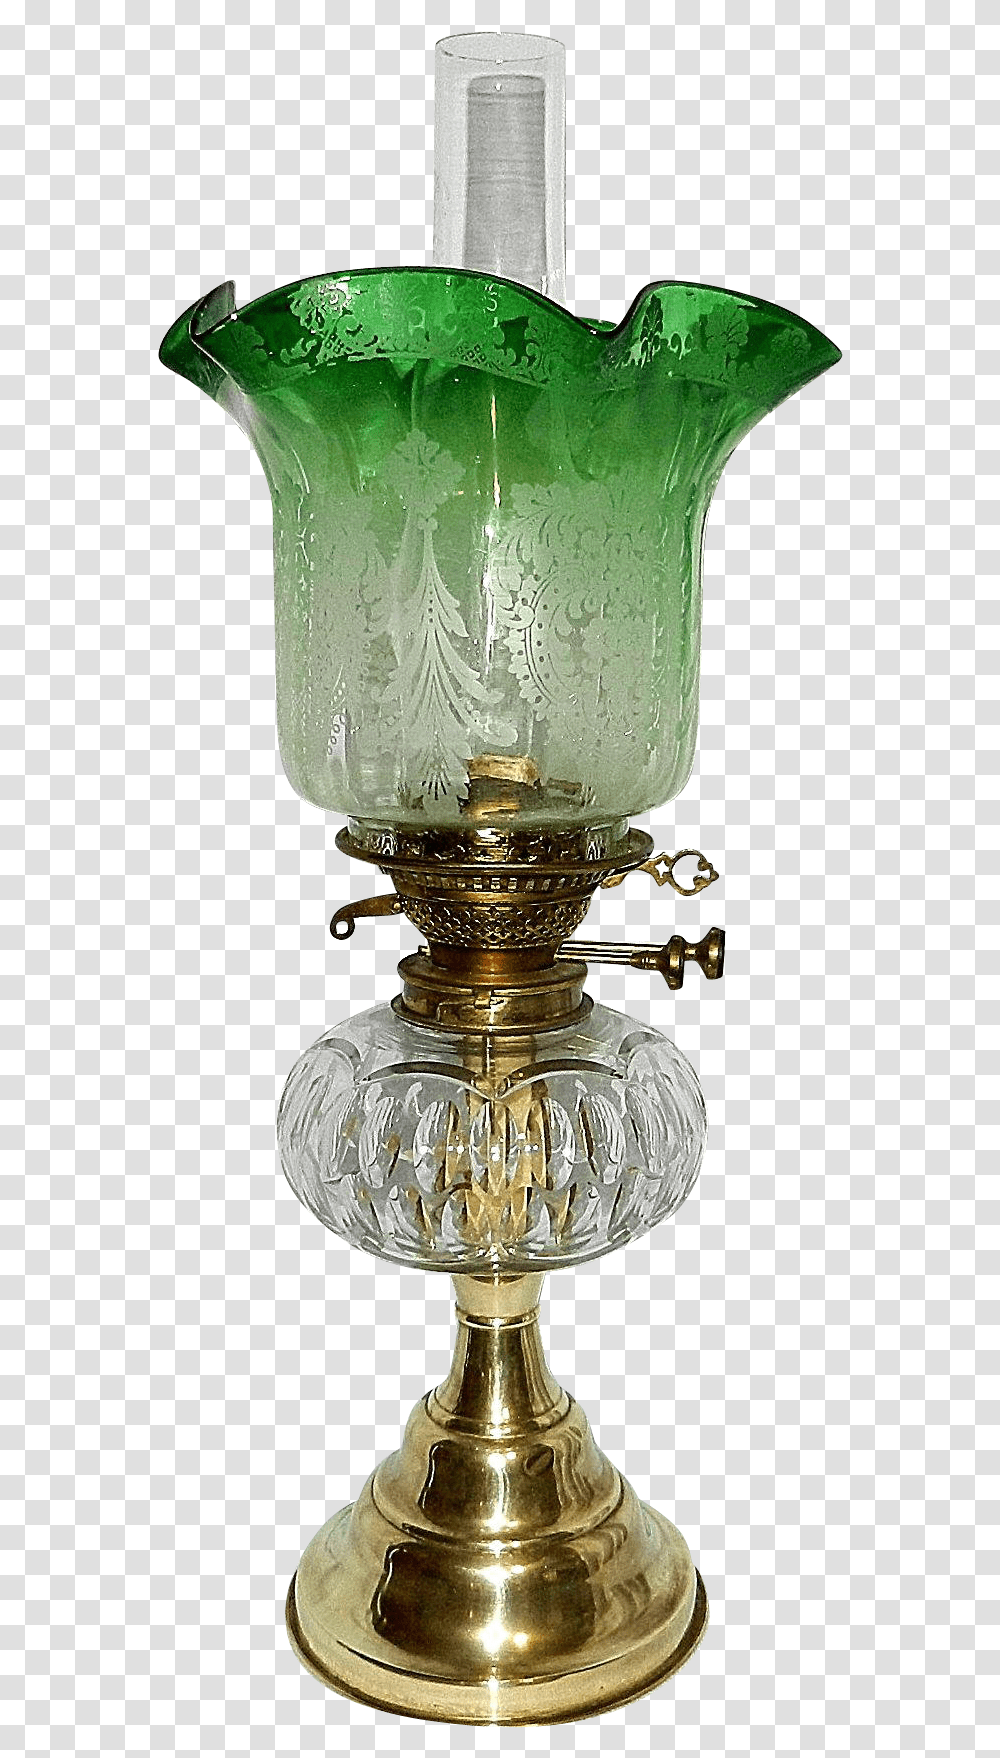 Oil Lamp, Lampshade, Table Lamp, Lantern, Jar Transparent Png